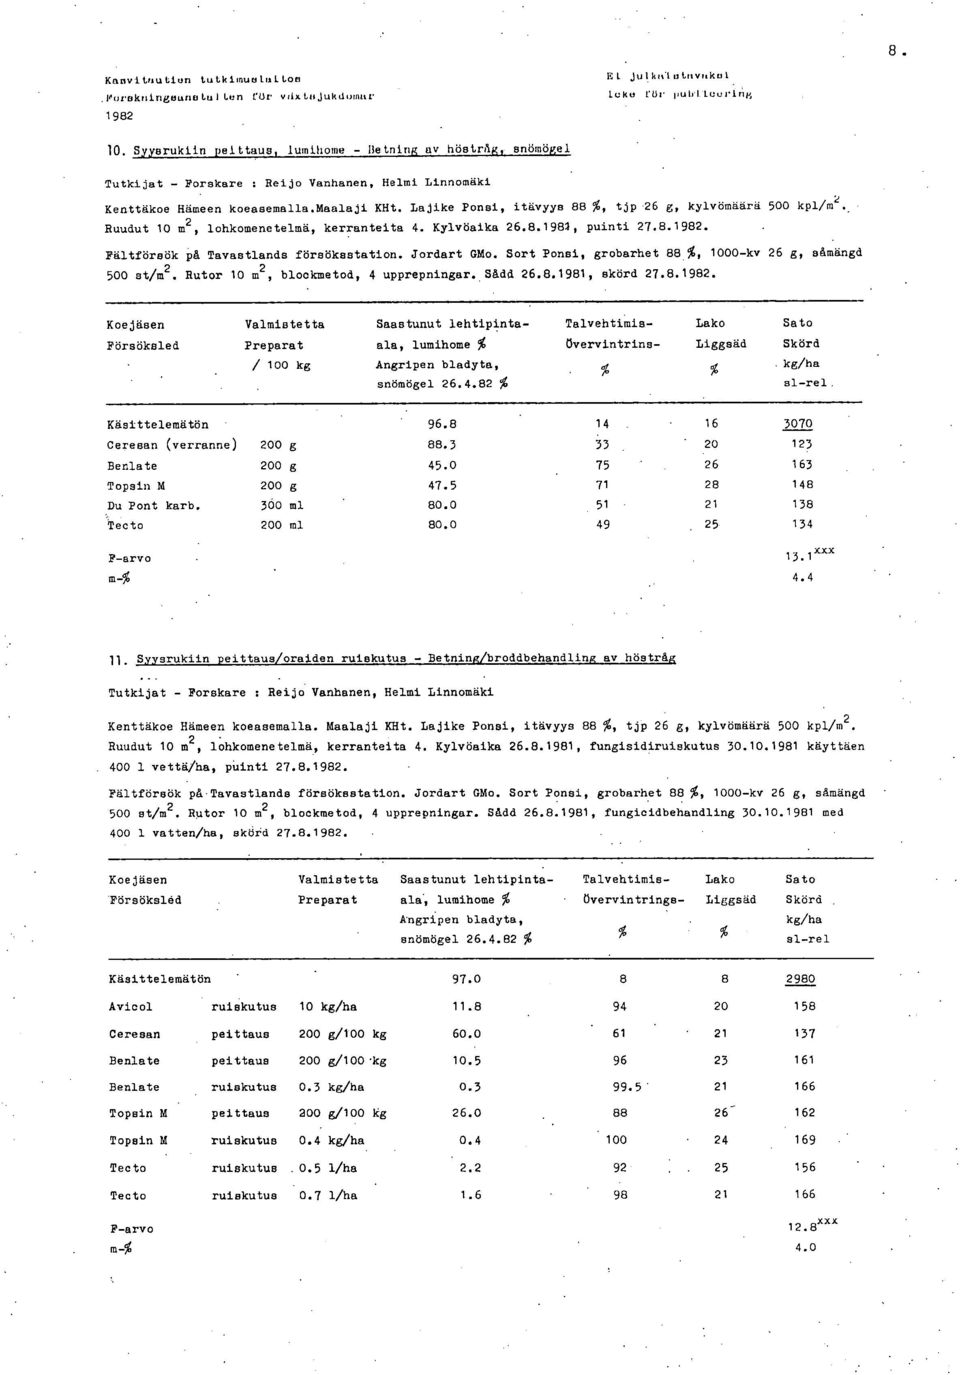 Lajike Ponsi, itavyys 88 %, tjp 26 g, kylvomaara 5 kpl/m2. Ruudut 1 m2, lohkomenetelmå, kerranteita 4. Kylvöaika 26.8.1981, puinti 27.8.. Faltförsök på Tavastlands försöksstation. Jordart GMo.